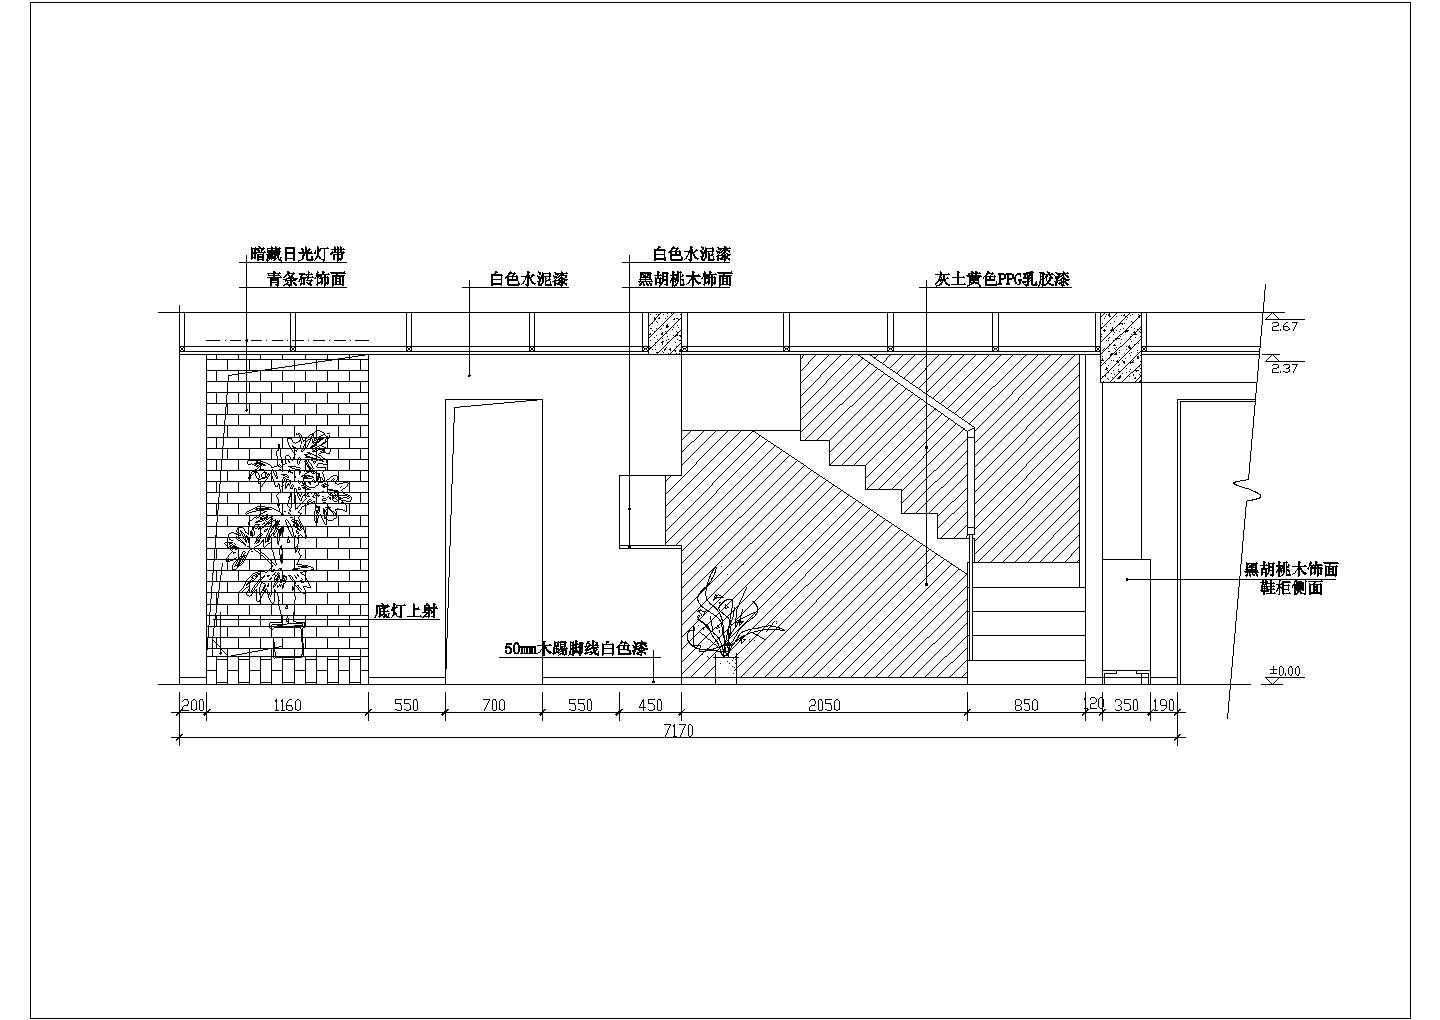 嘉兴花园餐厅详细建筑施工图